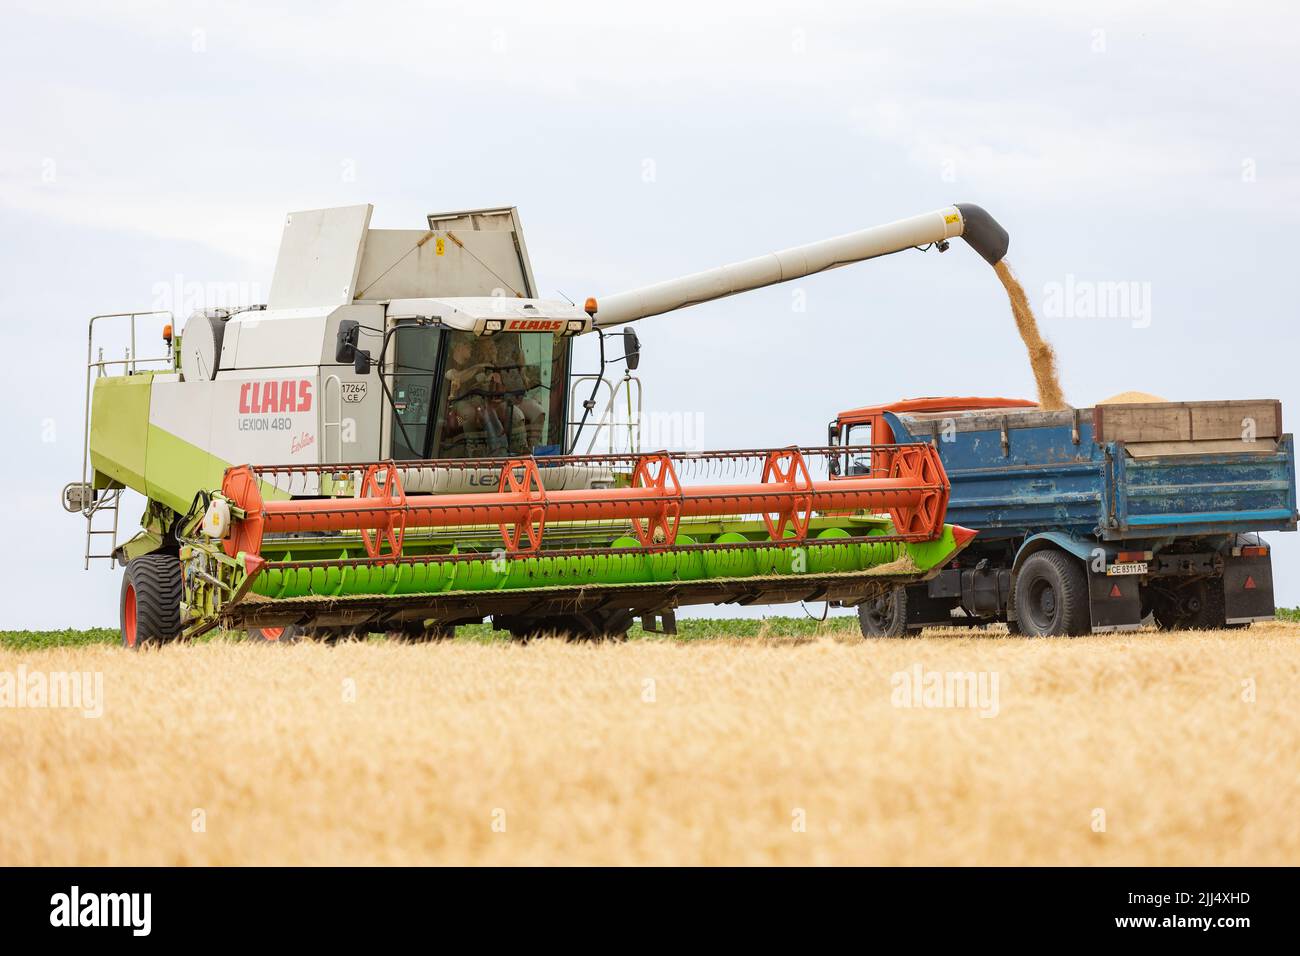 La moissonneuse-batteuse moissonne du blé et la verse dans le camion à benne pendant la récolte du blé à la fin de l'été. Concept d'une récolte riche. Agriculture agricole agricole Banque D'Images